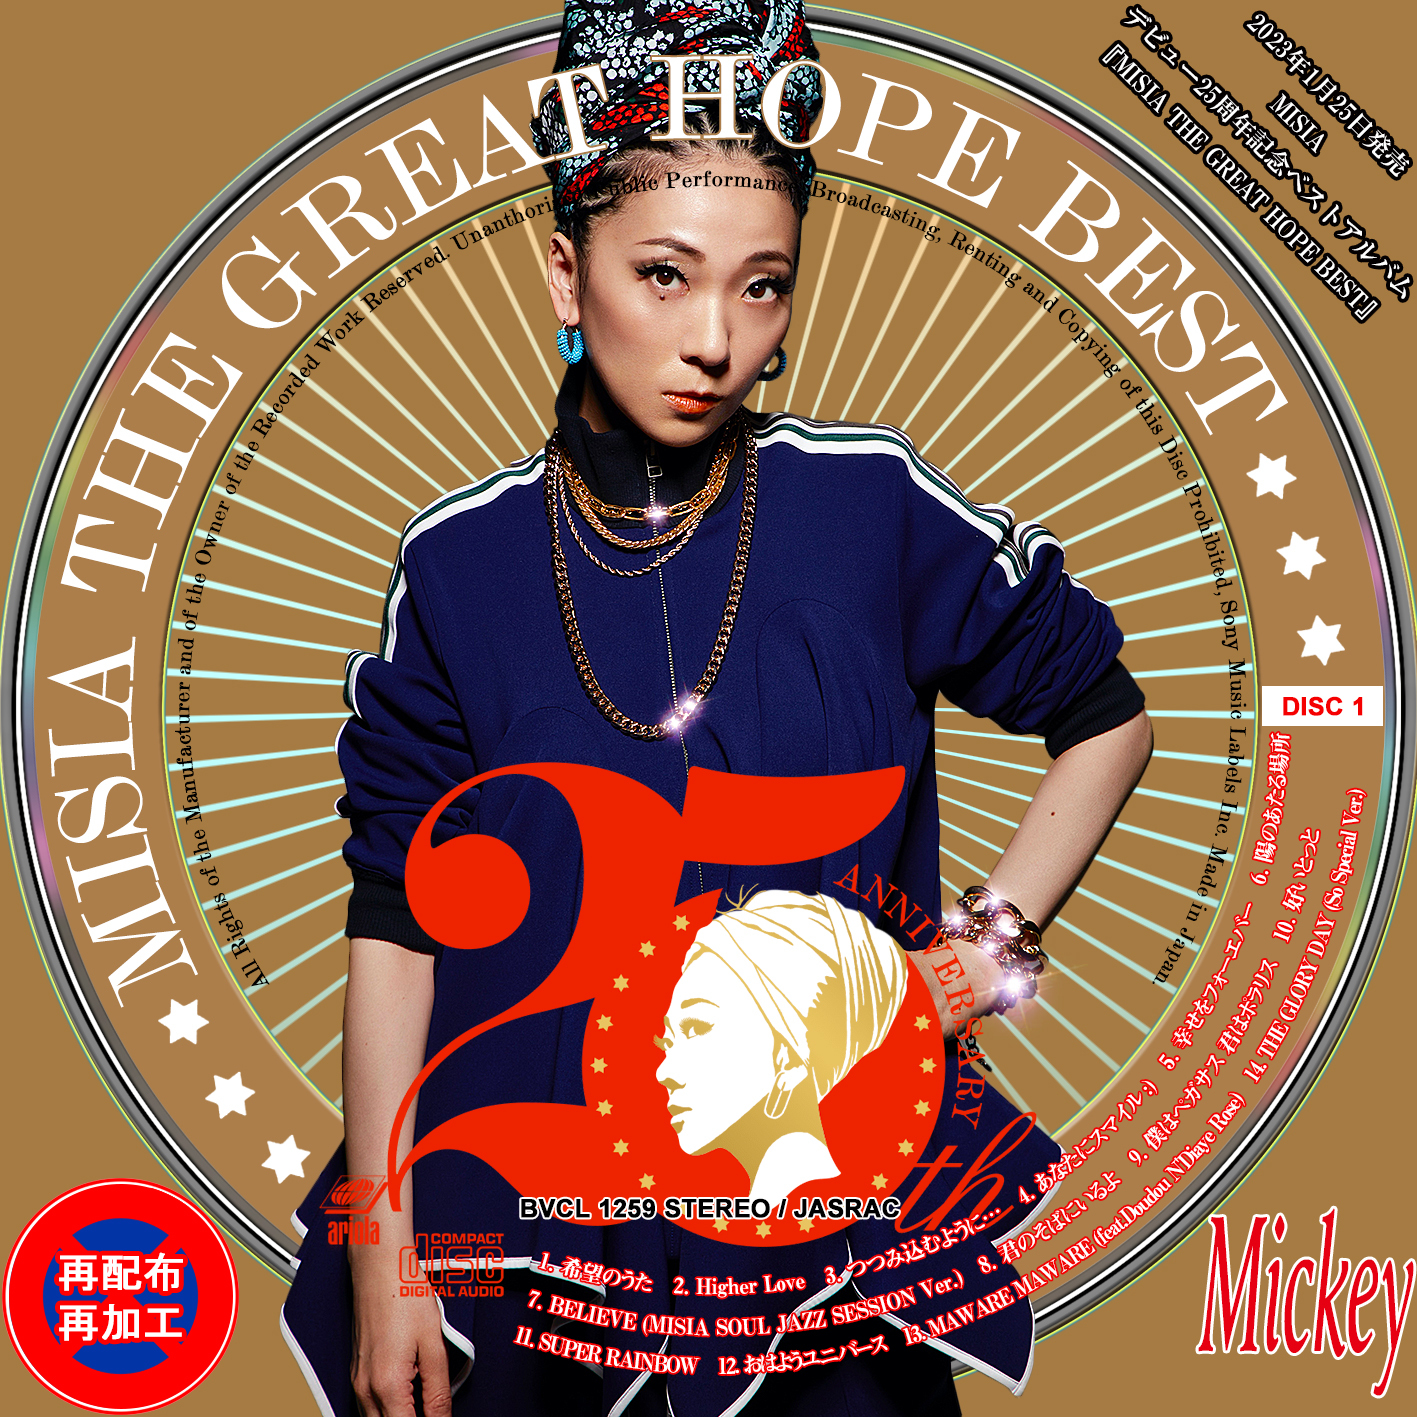 国内初の直営店 HOPE MISIA MISIA Amazon.co.jp: THE GREAT GREAT HOPE 